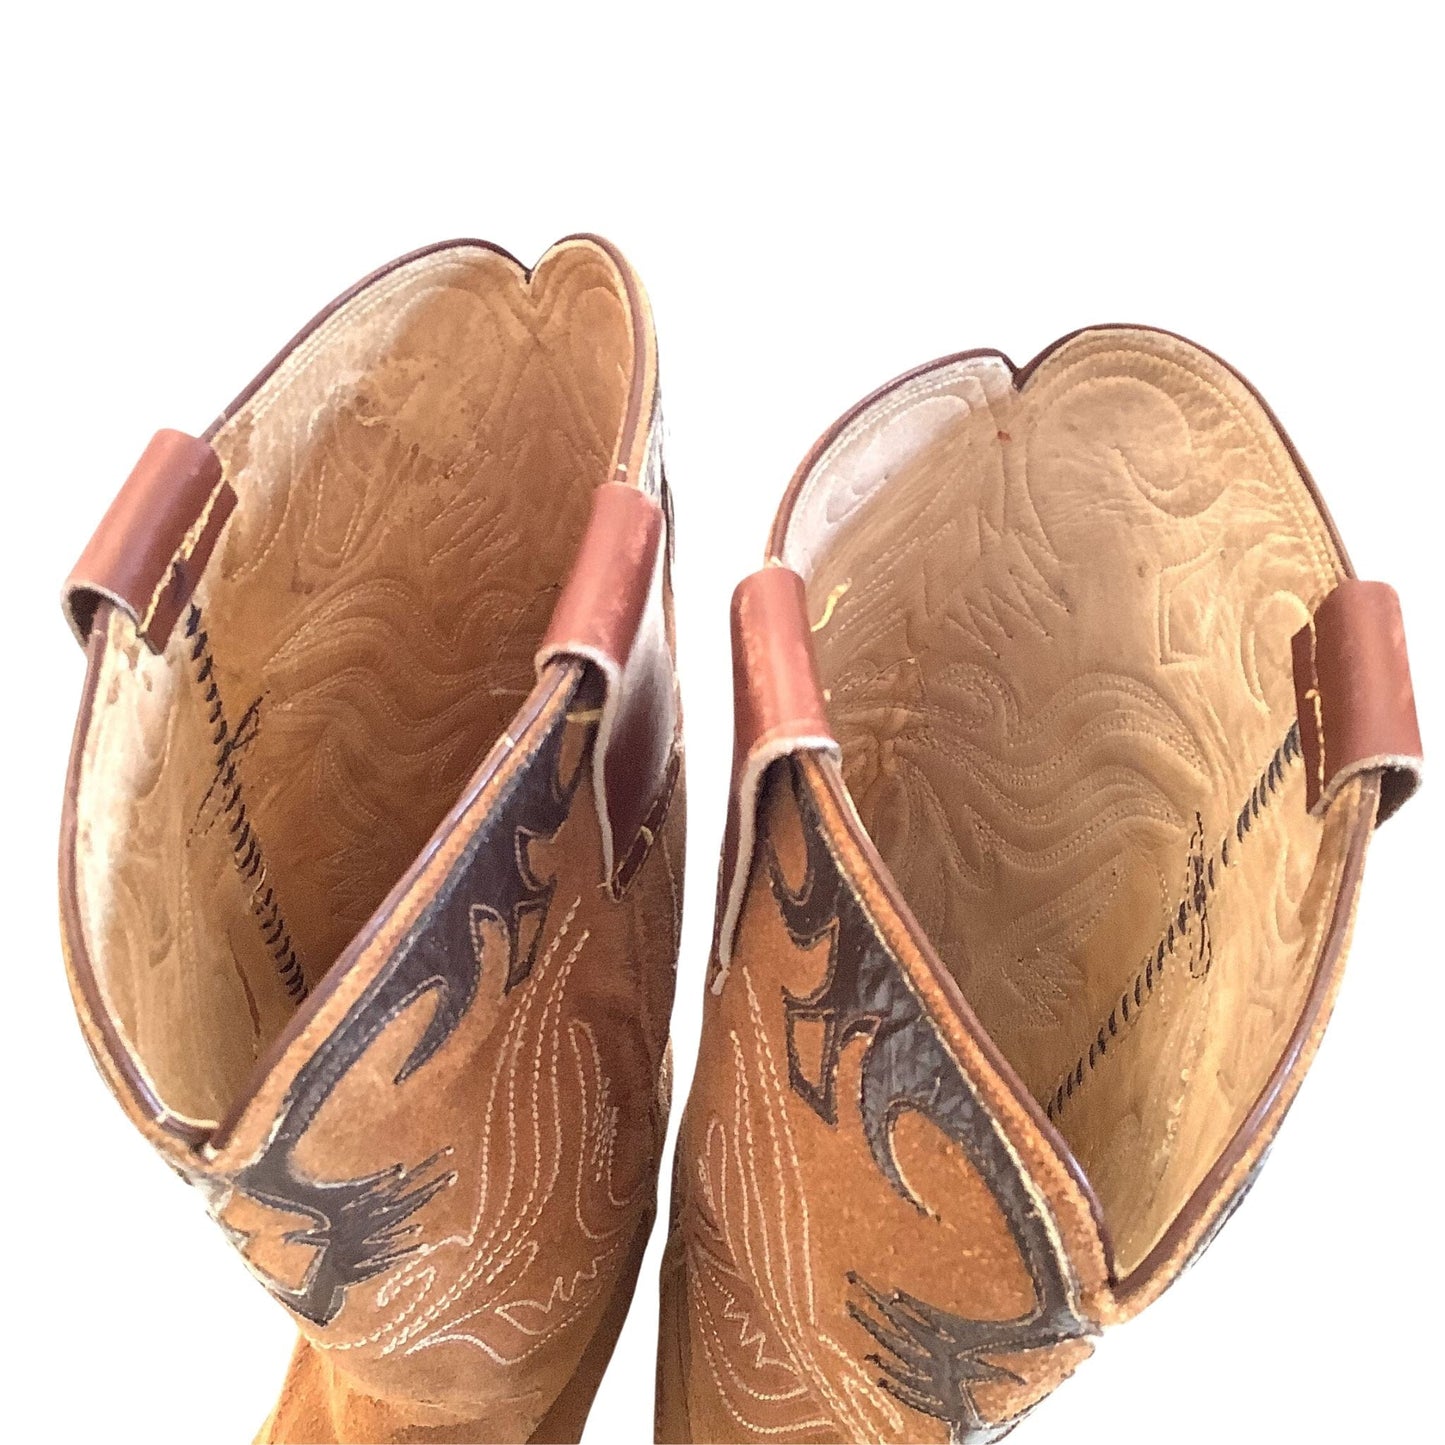 Fancy Cowboy Boots 7 / Tan / Vintage 1950s